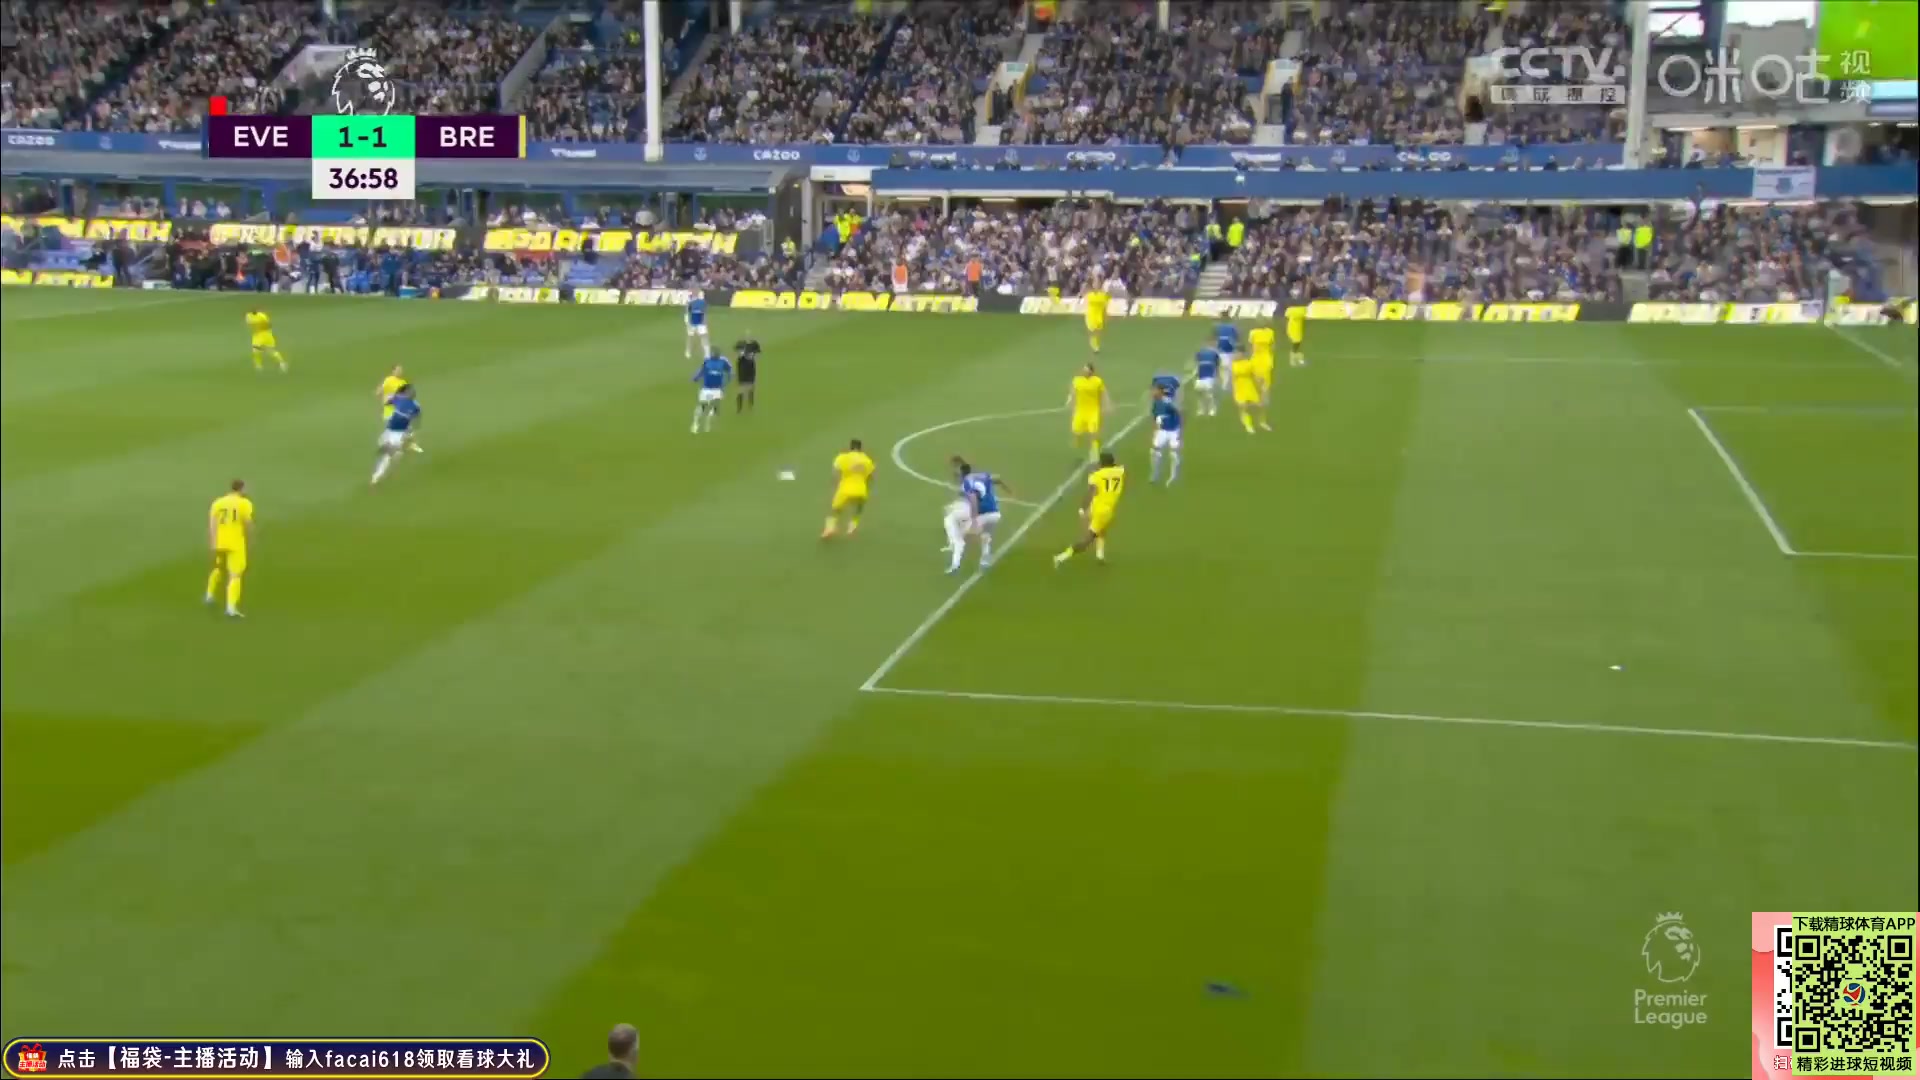 EPL Everton Vs Brentford Seamus Coleman Goal in 36 min, Score 1:1